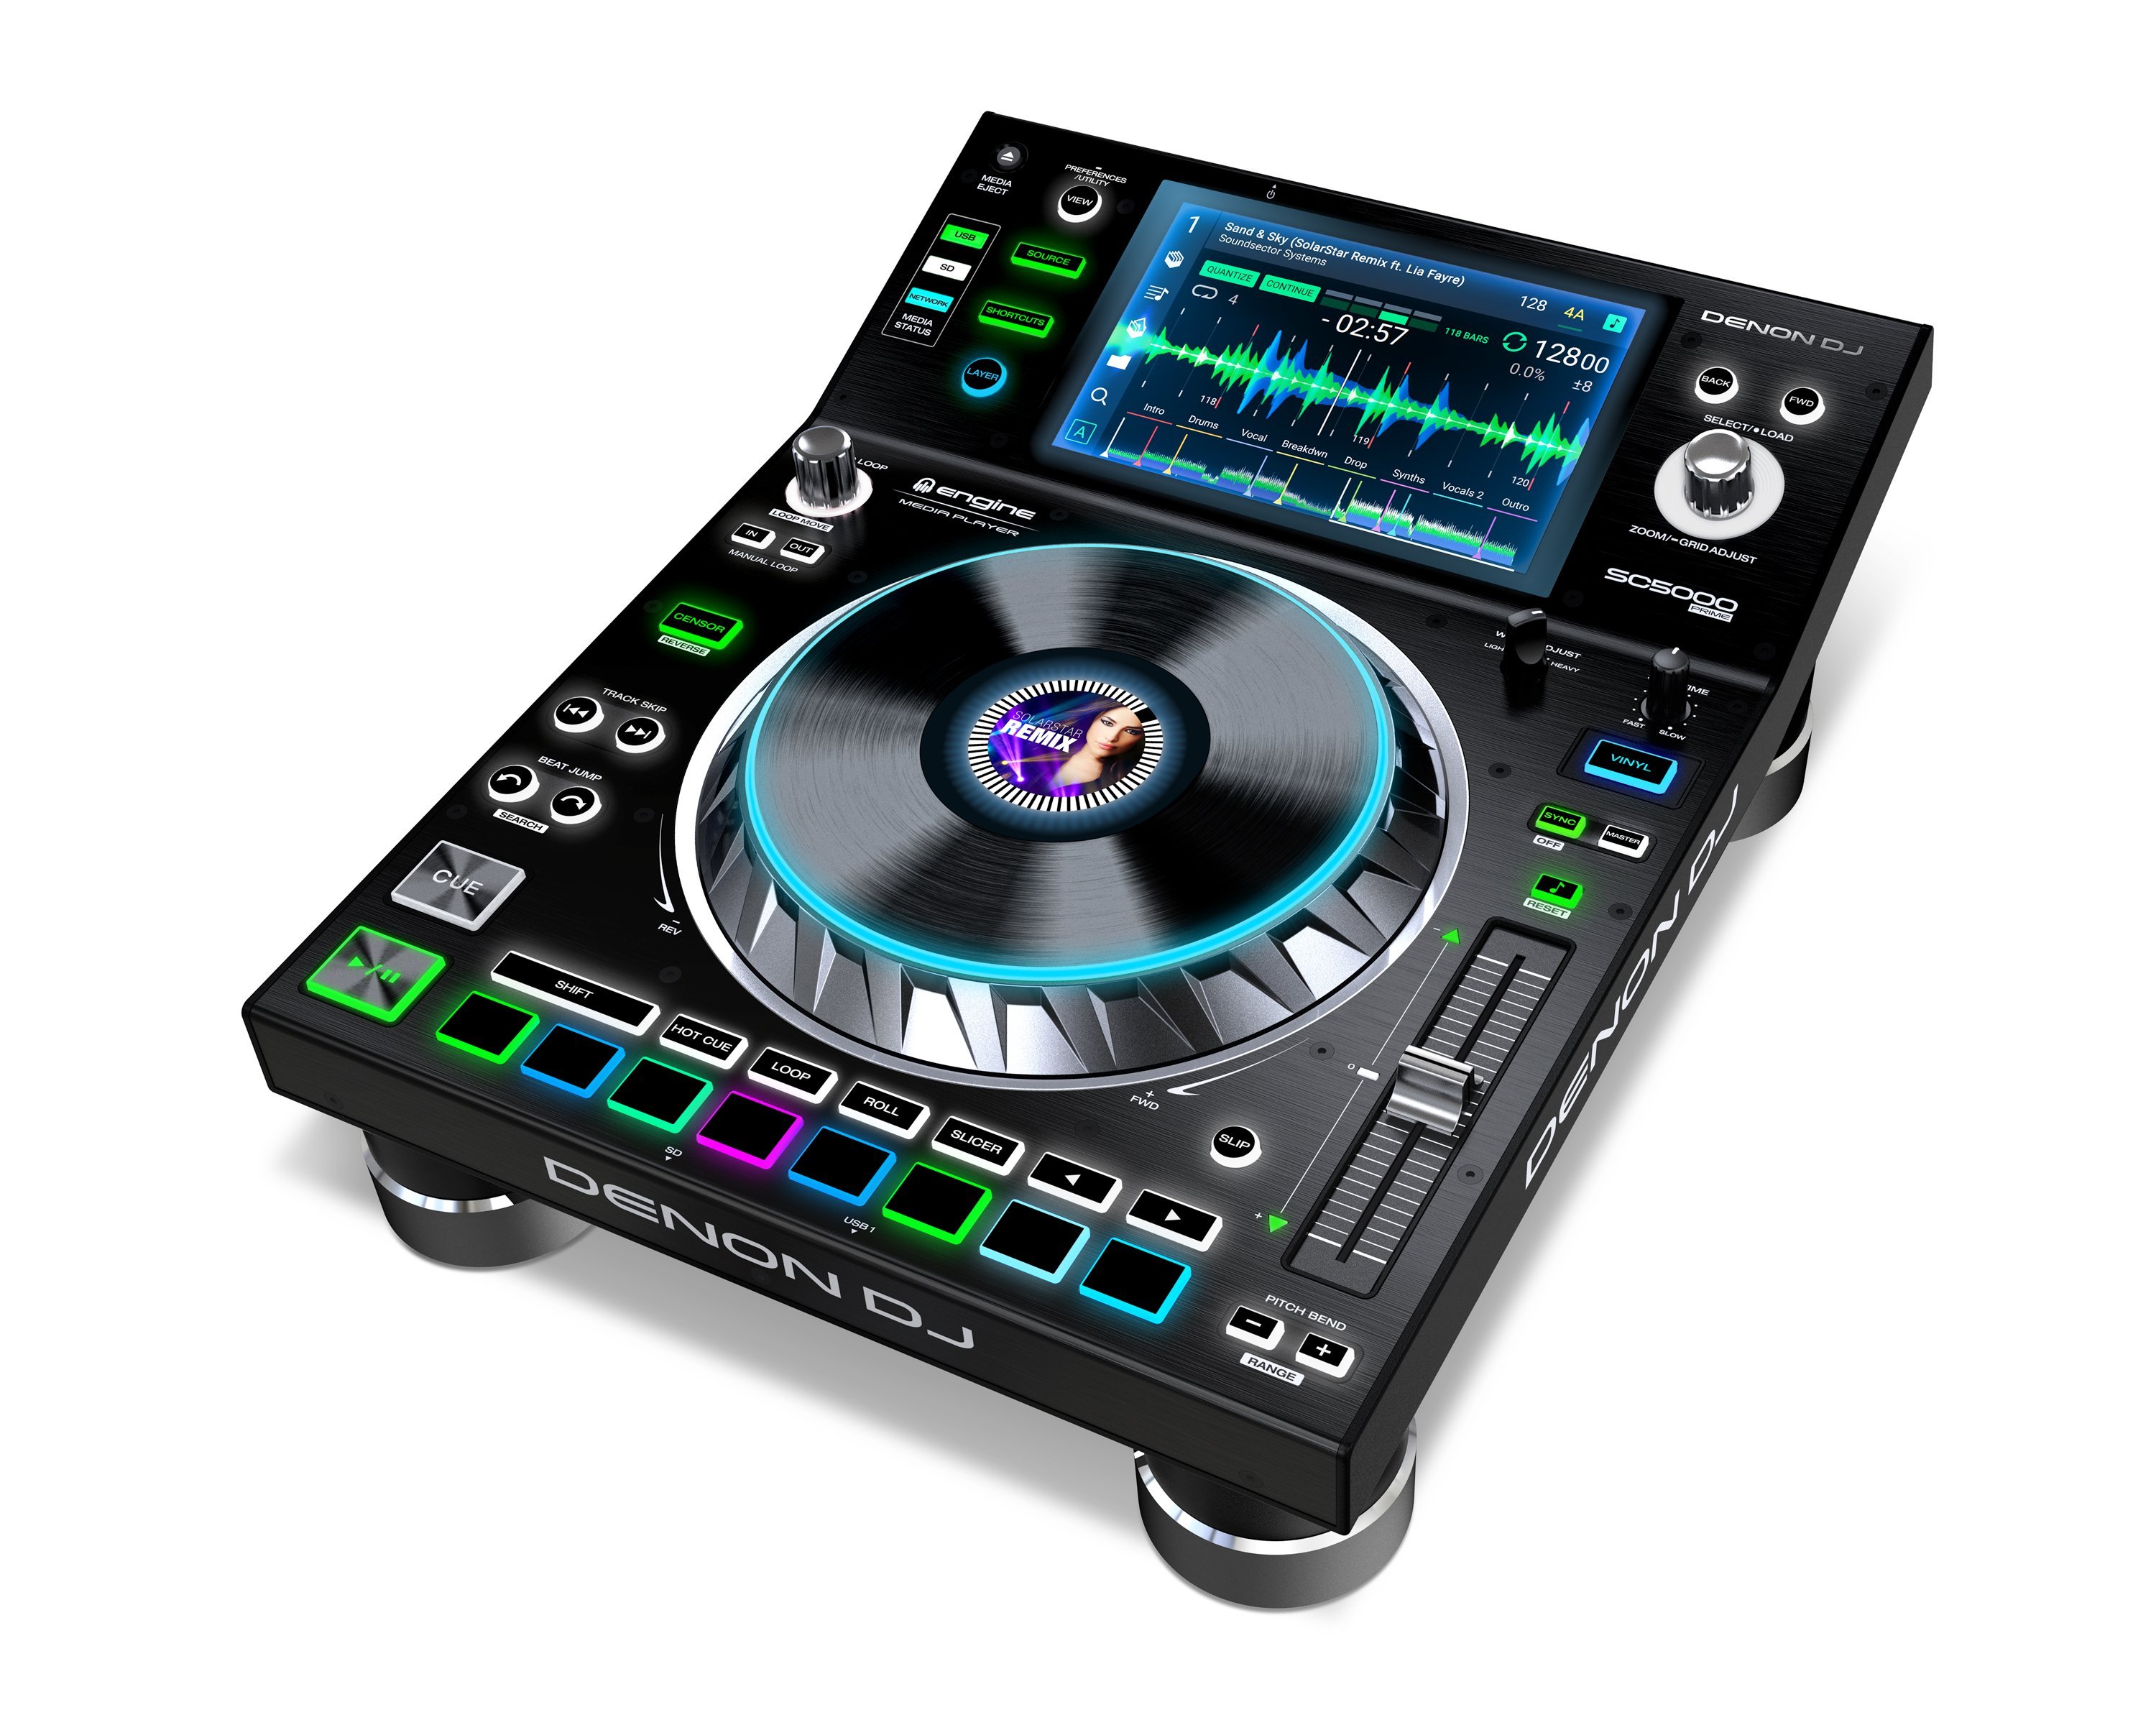 Neu: Denon DJ SC5000 Prime - DJ Mediaplayer